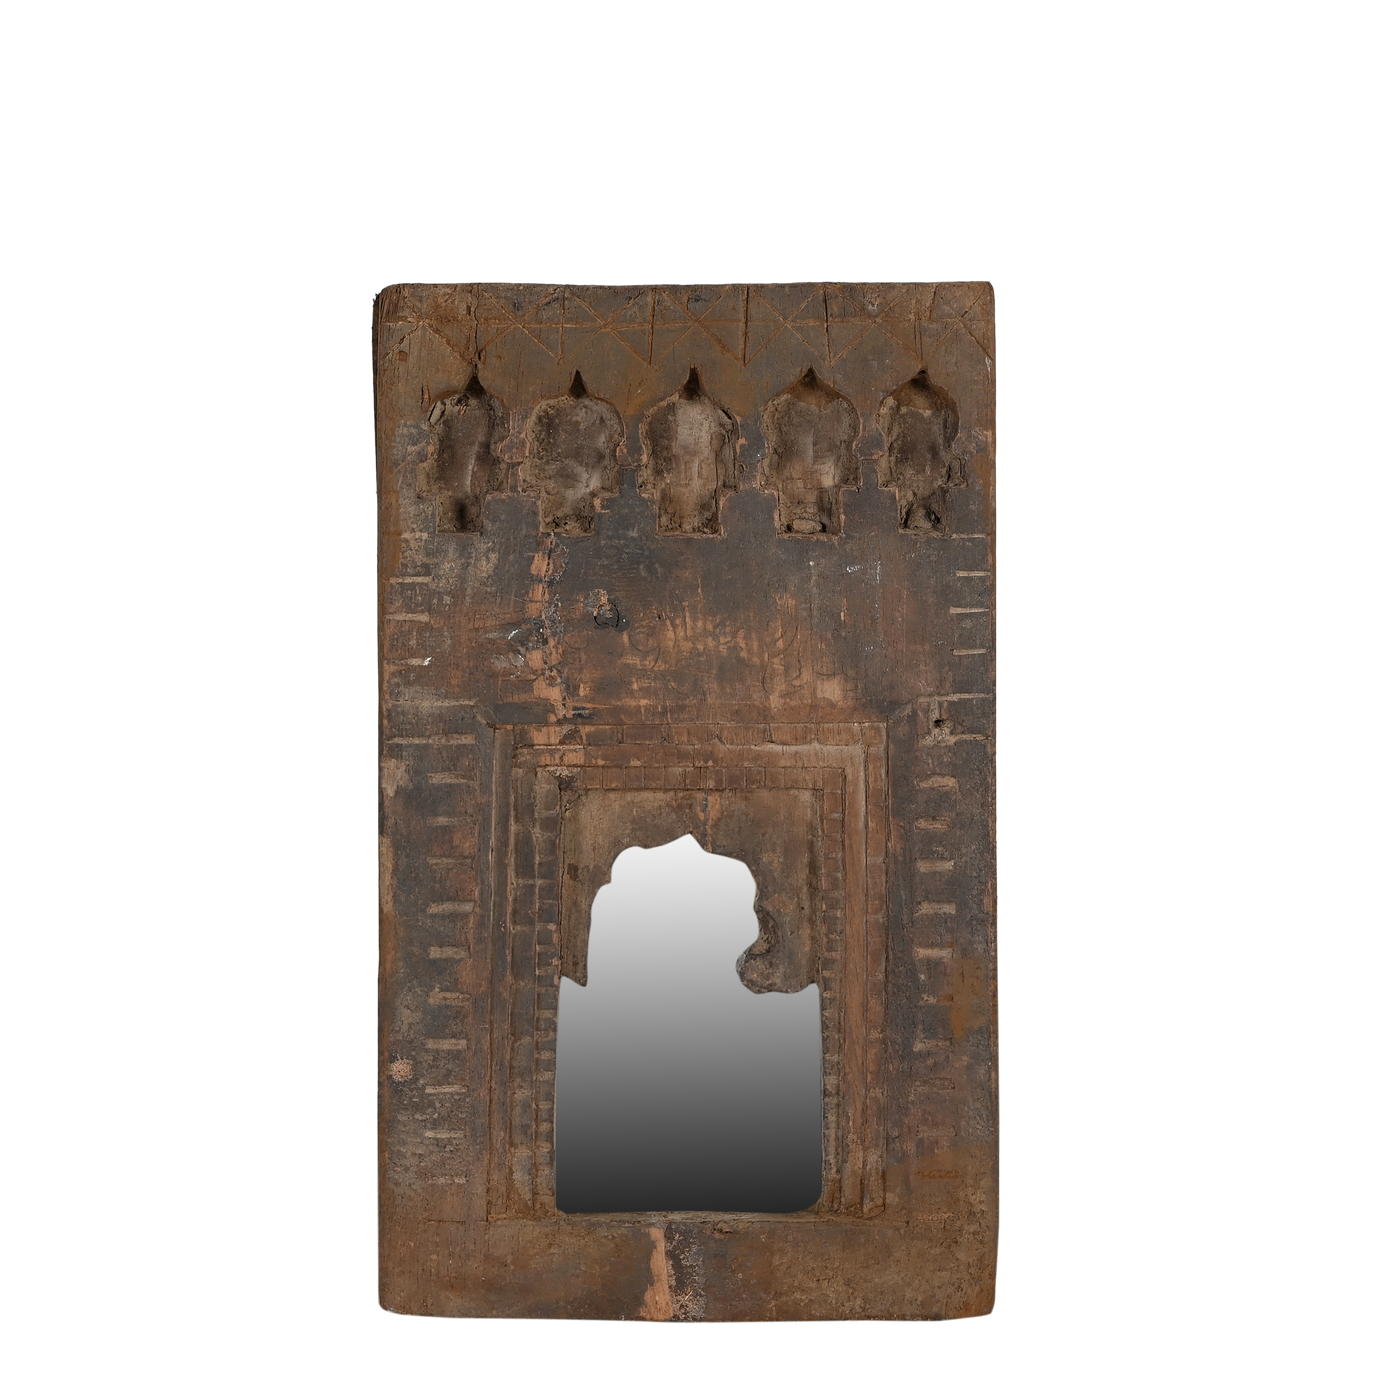 Mandir - Temple mirror n ° 53